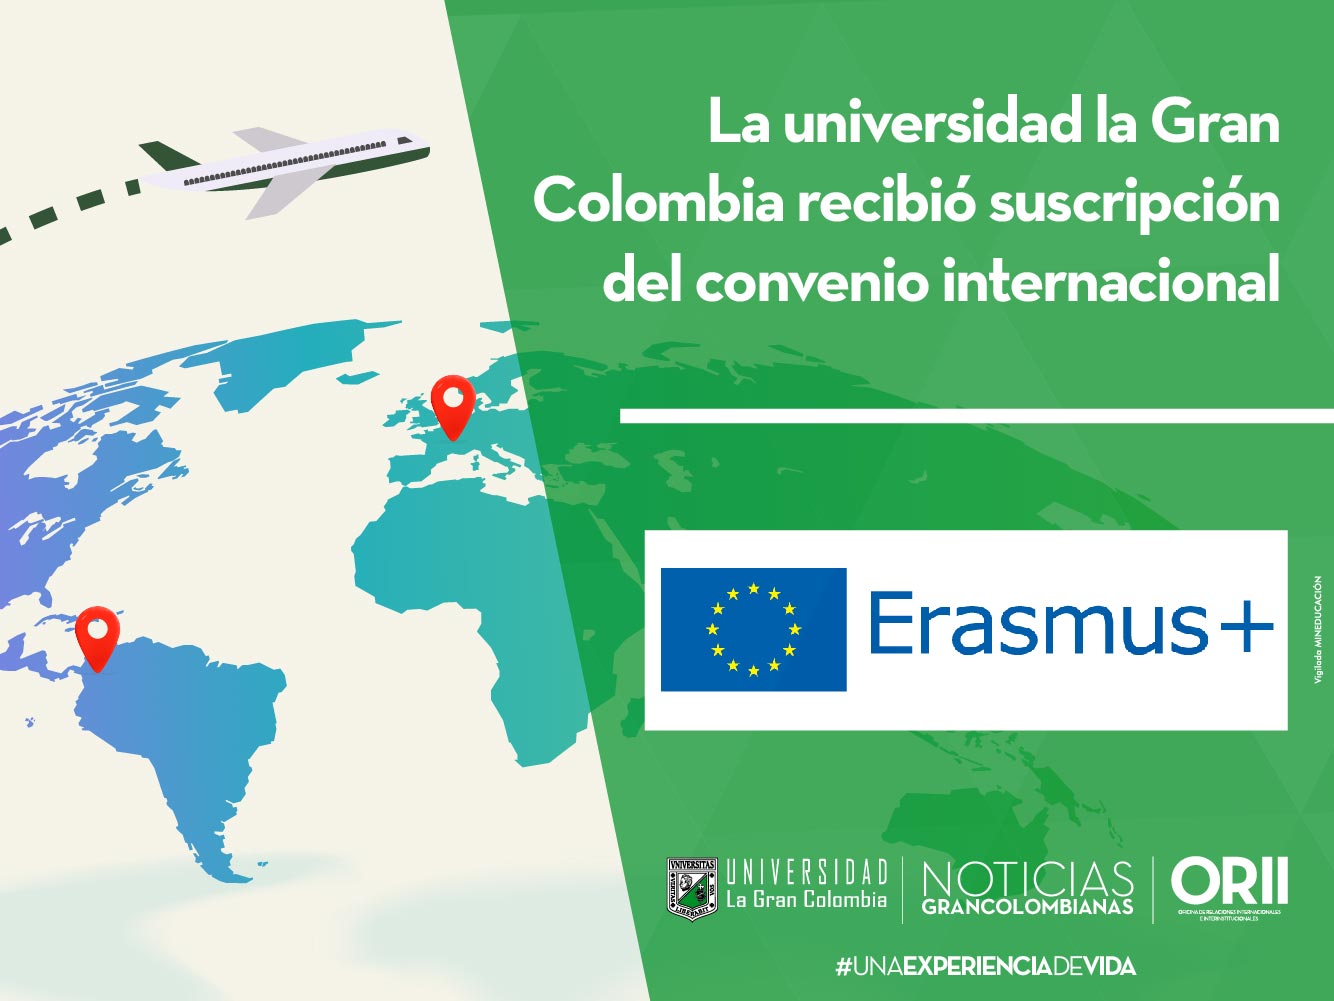 La Universidad La Gran Colombia recibió la suscripción del convenio internacional Erasmus +